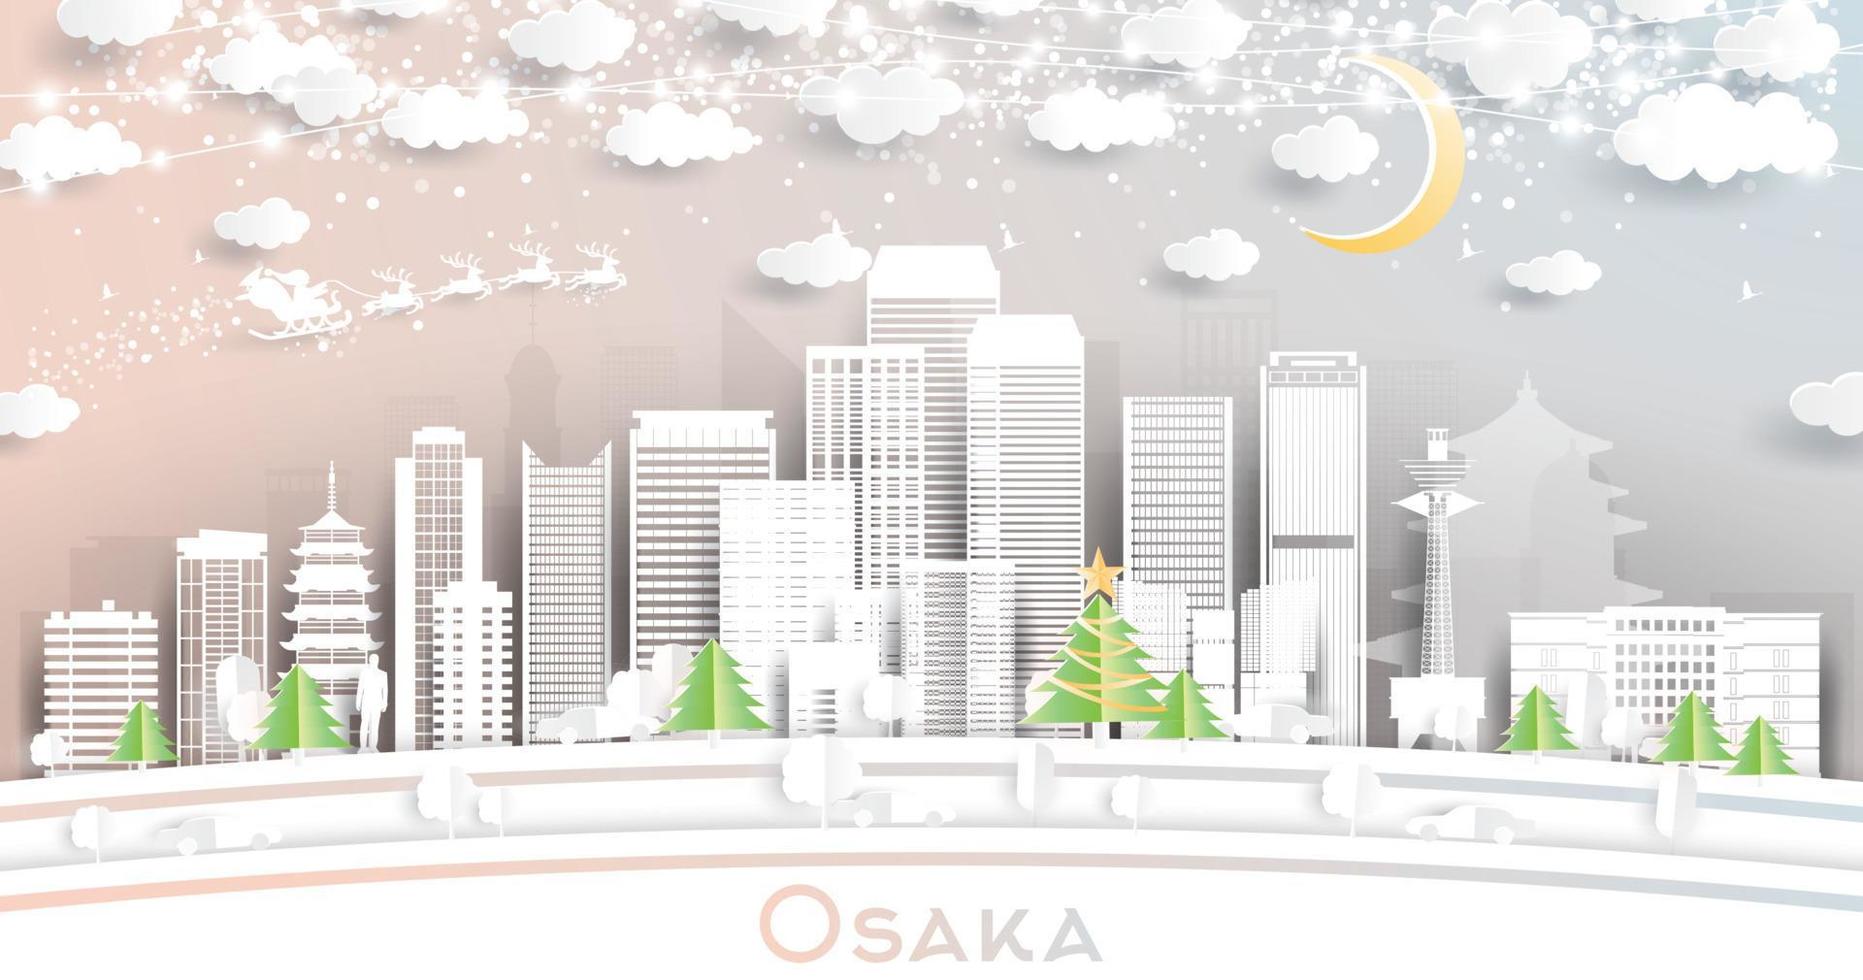 el horizonte de la ciudad de osaka japón en estilo de corte de papel con copos de nieve, luna y guirnalda de neón. vector